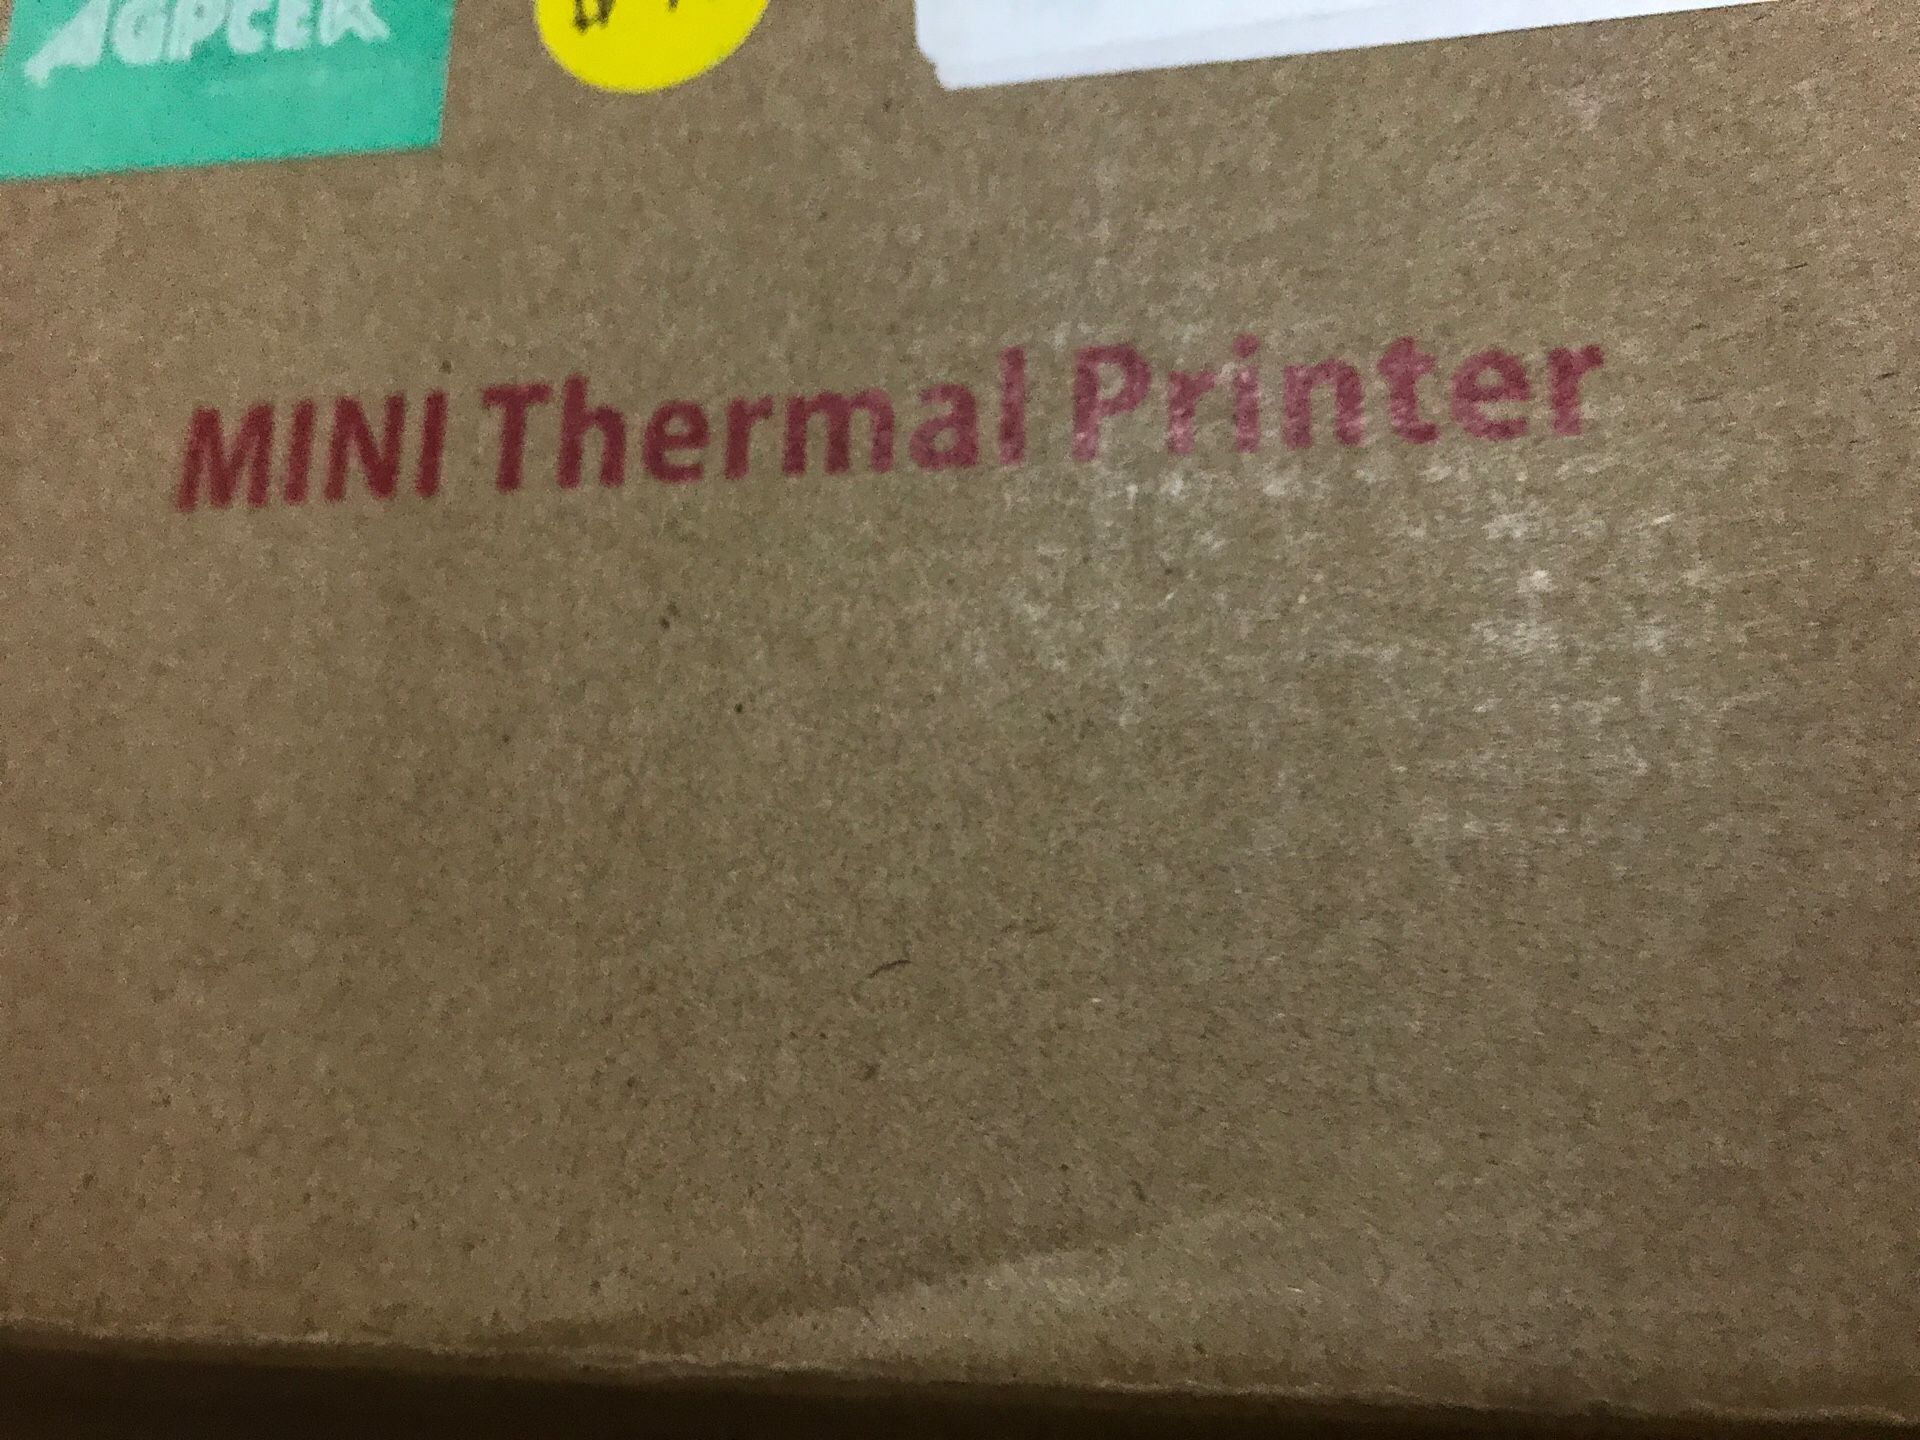 Mini thermal printer